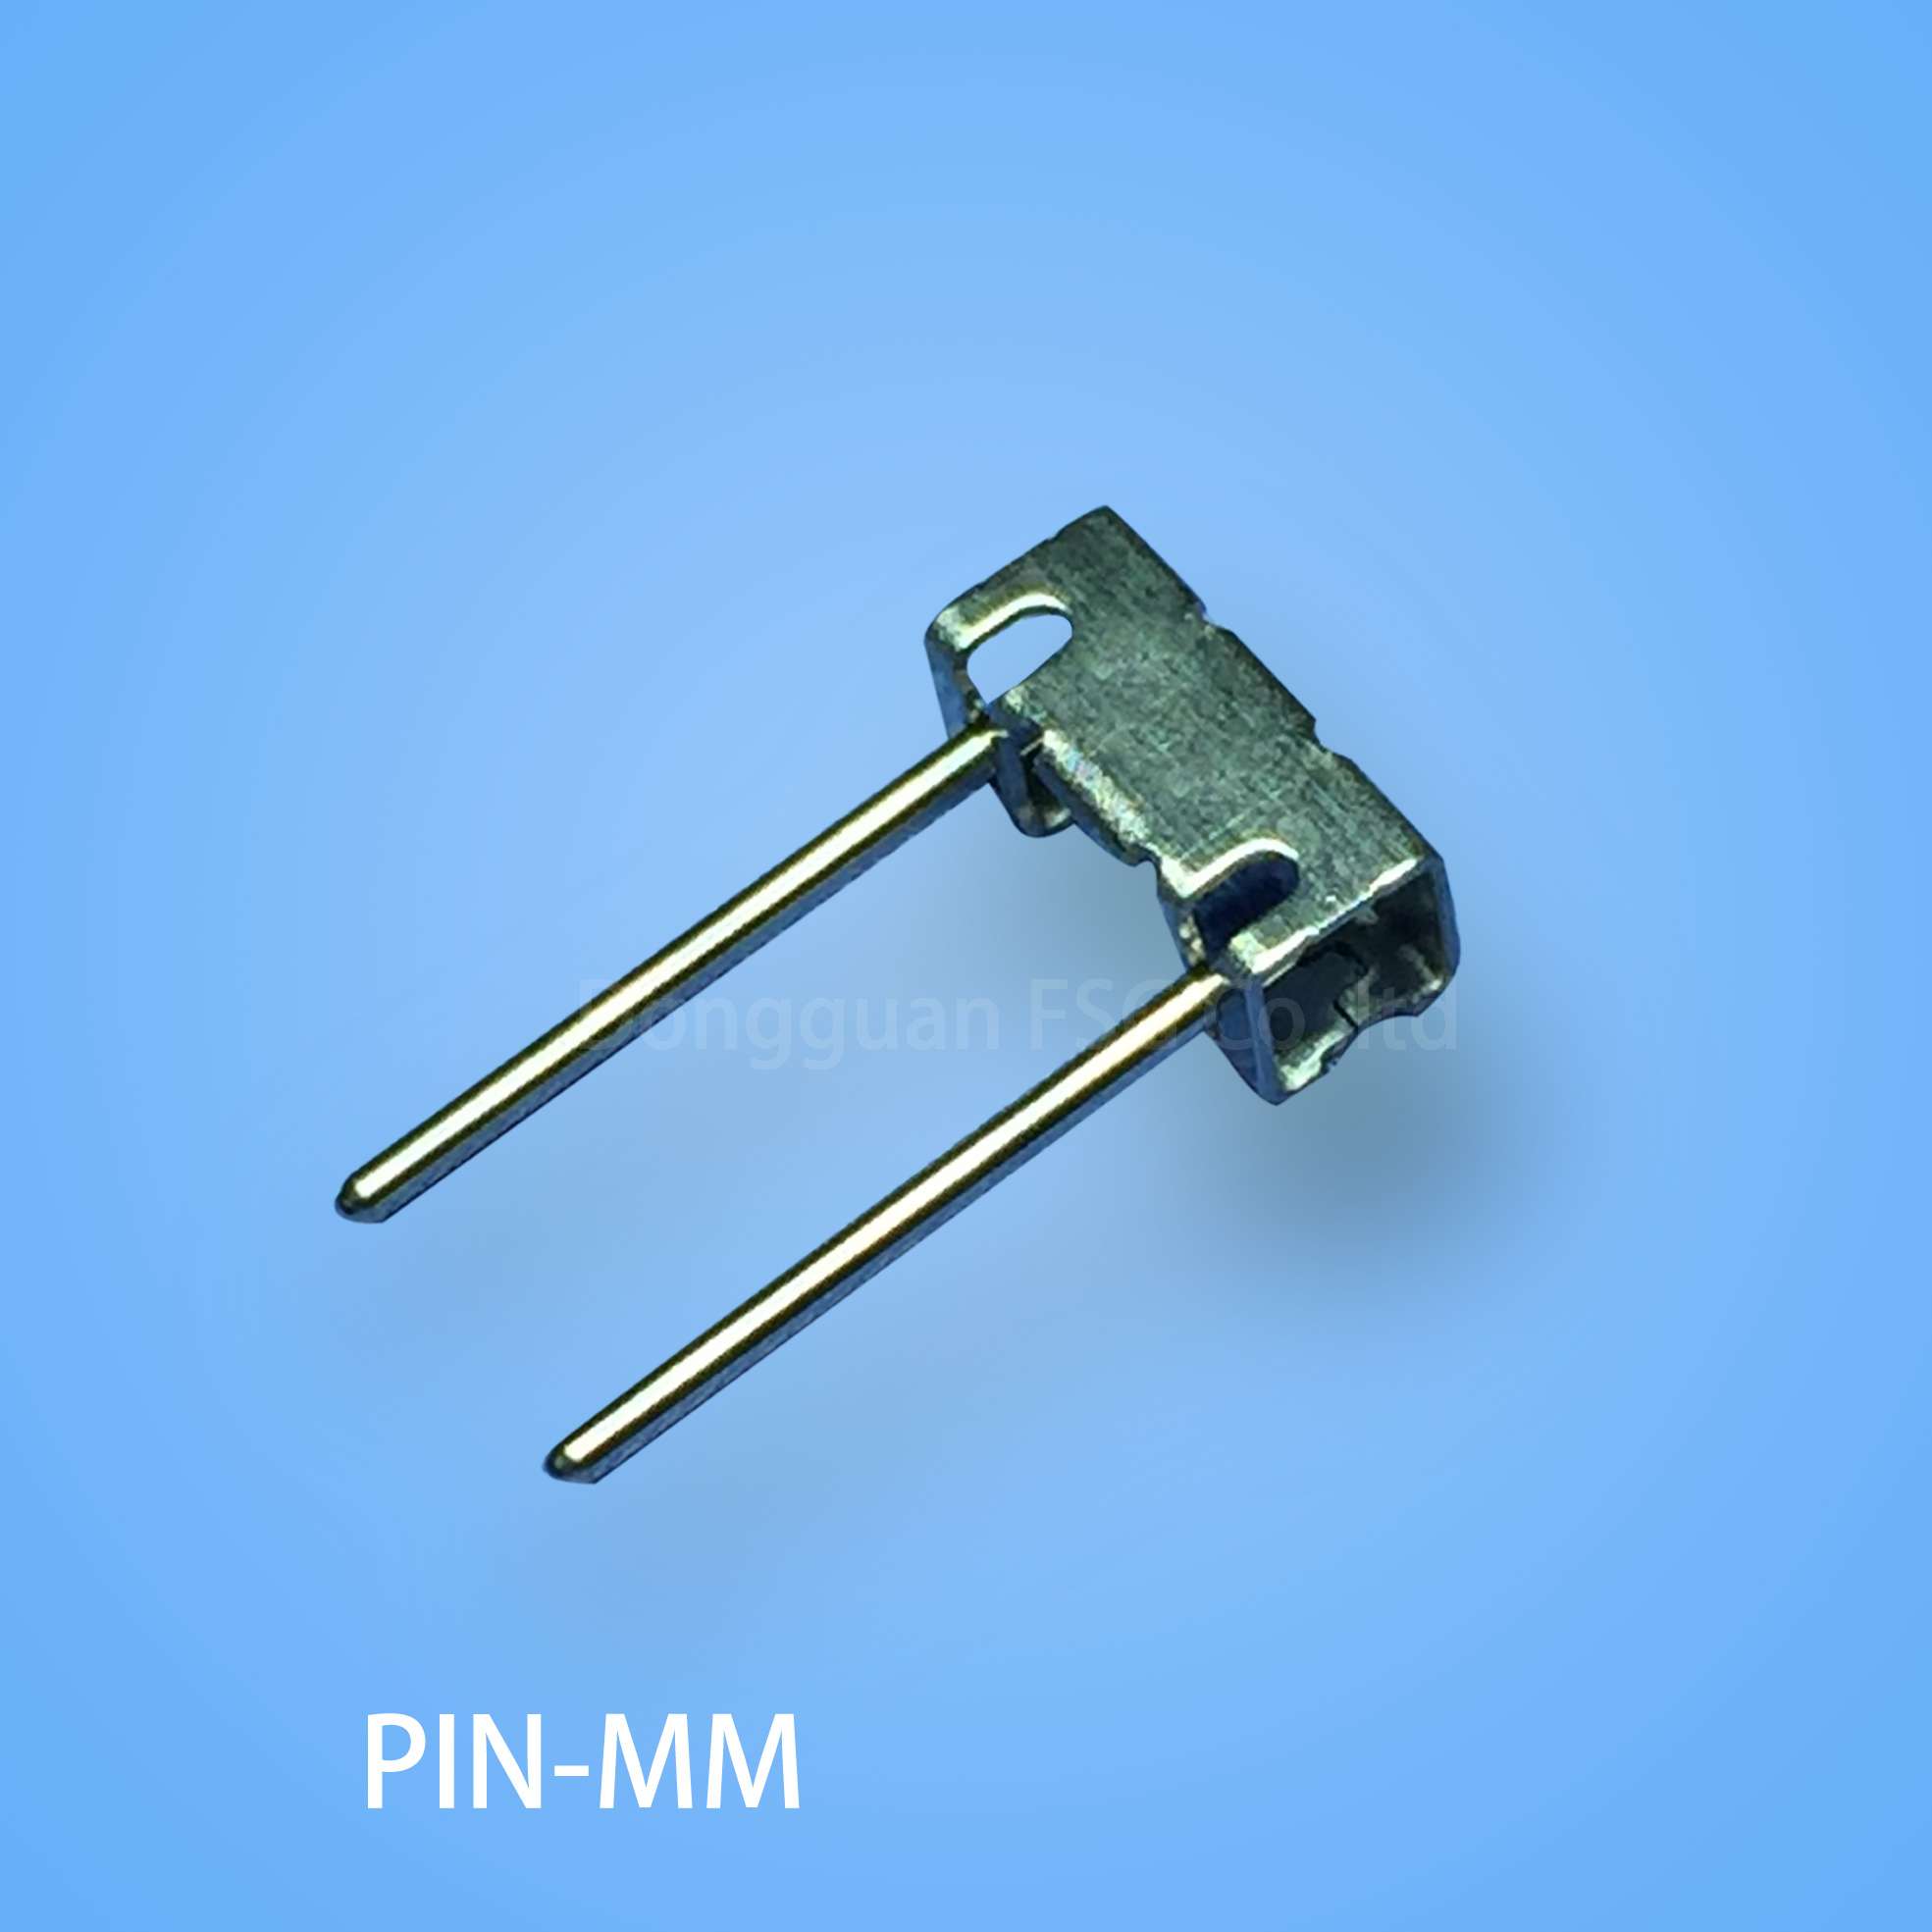 PIN-MM